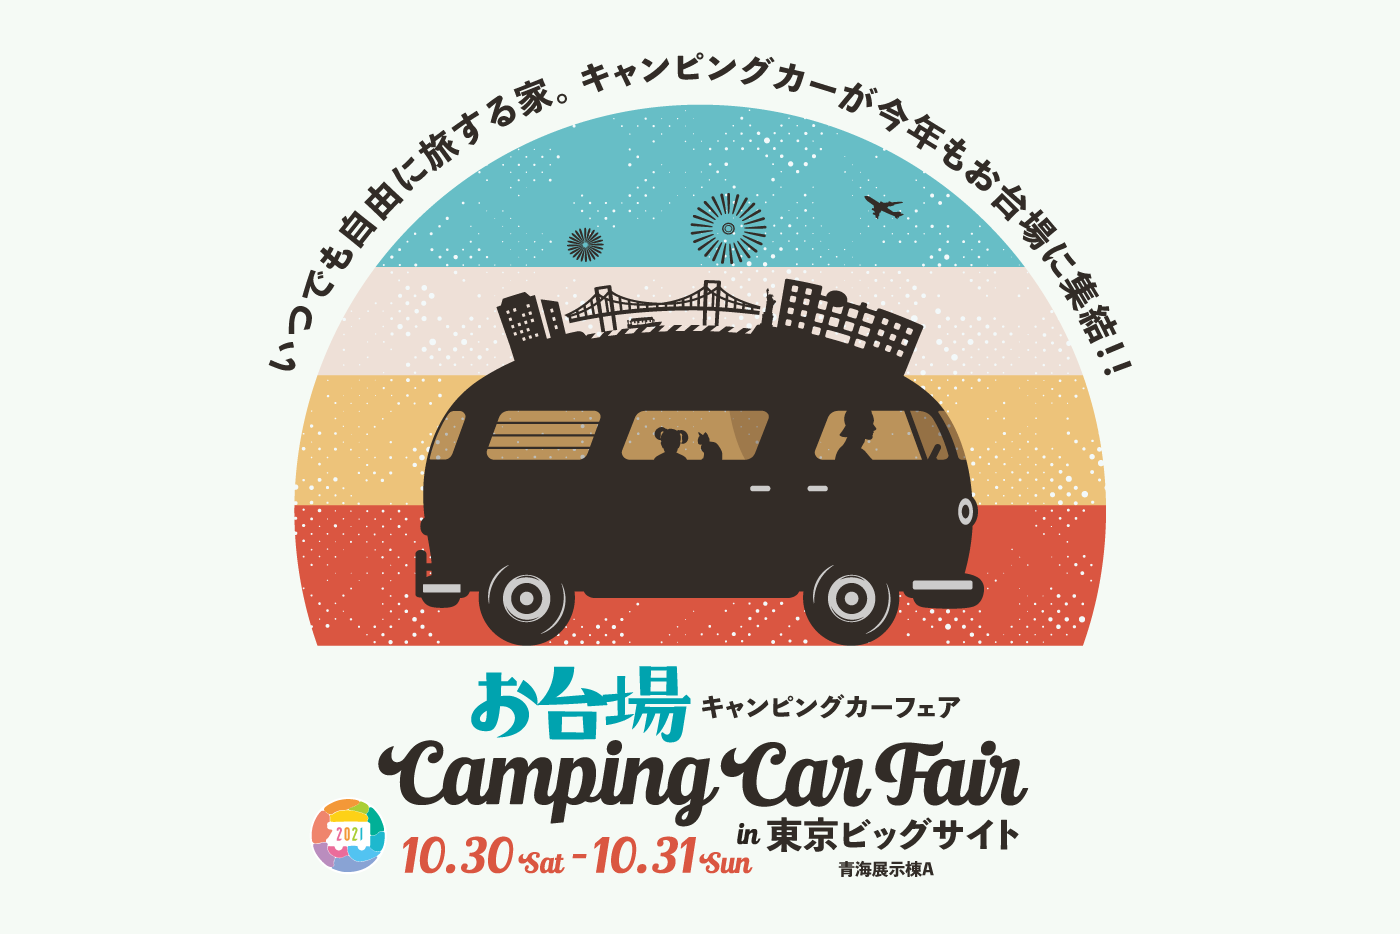 日本RV協会特別協賛の大型キャンピングカーイベントのお台場キャンピングカーフェア2021にコンパスビッツ、ベルランゴキャンパー、エスコートで参加いたします